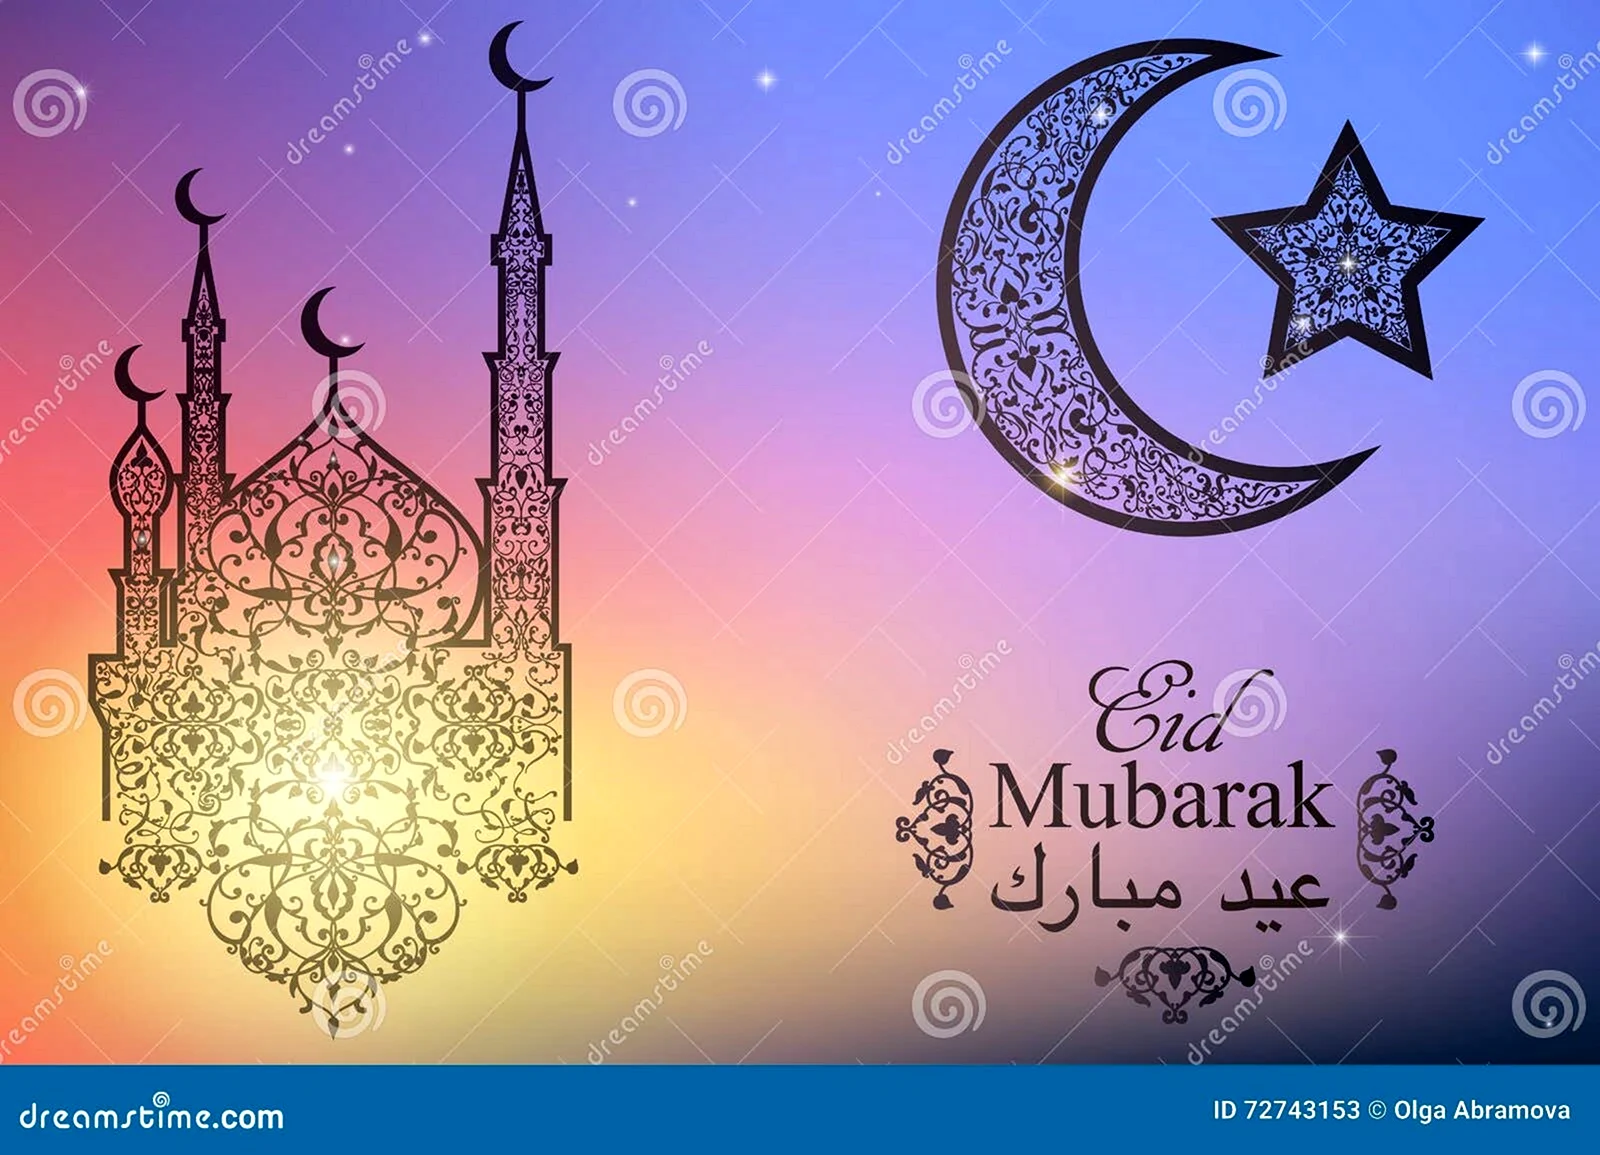 Открытка с праздником Eid Mubarak на английском